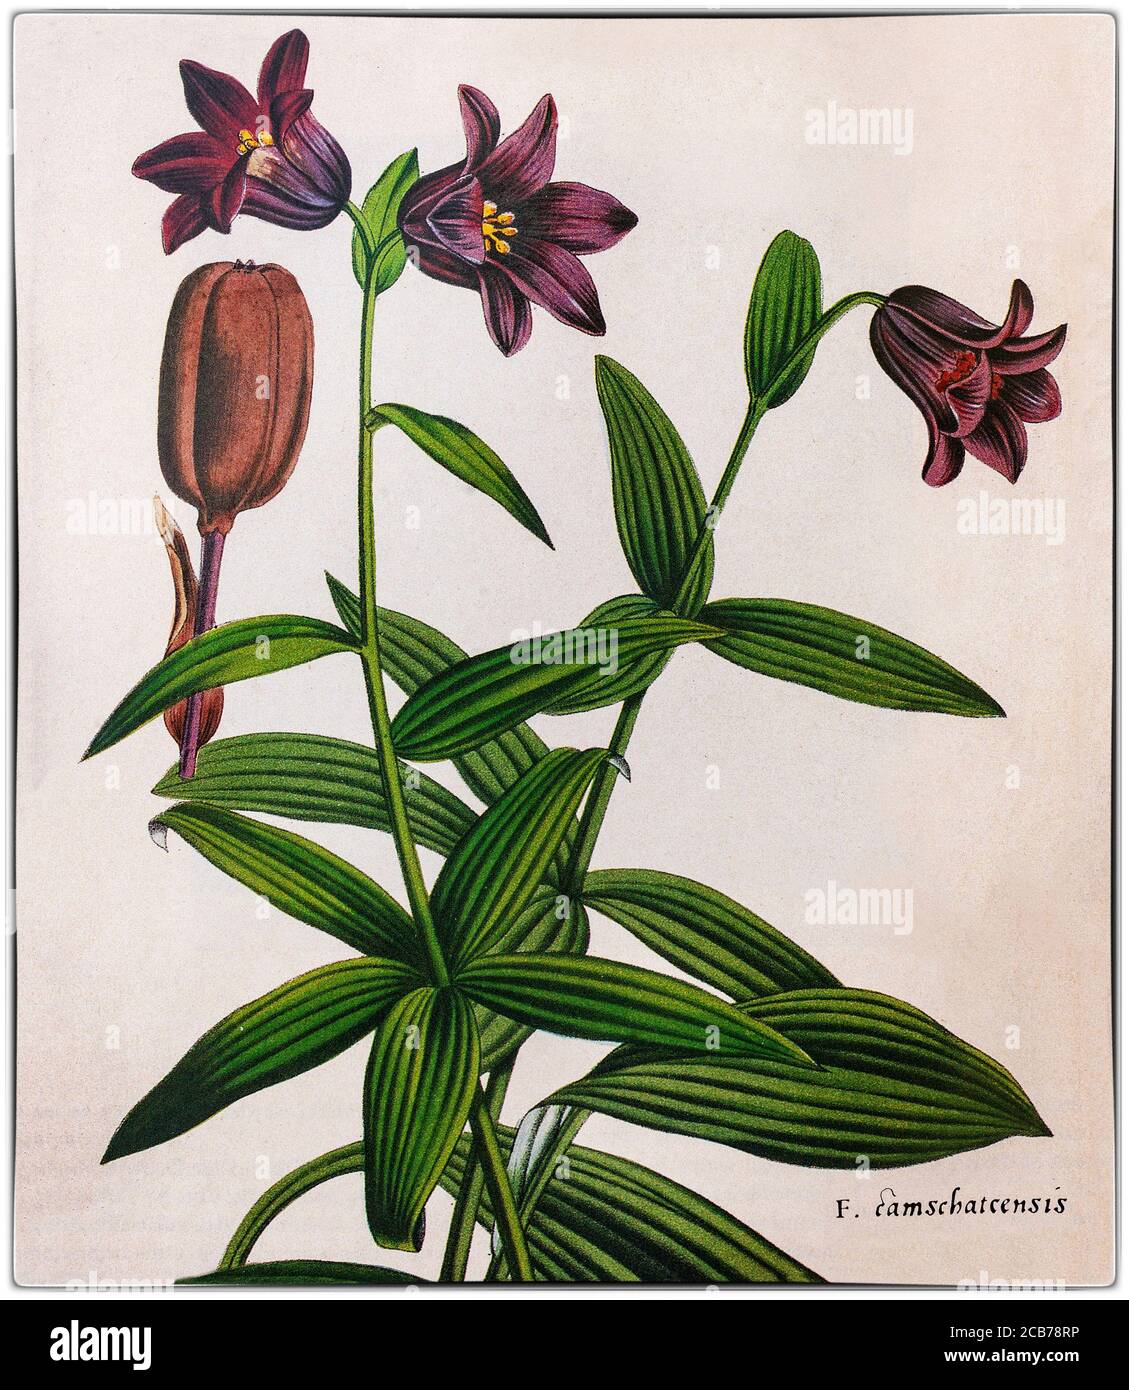 Fritillaria camschatcensis, AKA Kamtschatka Lilie, "Schokoladenlilie" gemalt von Pierre-Joseph Redouté (1759-1840), ein Maler und Botaniker aus Belgien. Eine blühende Pflanze aus der Familie der Liliengewächse stammt aus Nordostasien, dem Nordwesten Nordamerikas und dem russischen Fernen Osten. Der gebräuchliche Name "Schokoladenlilie" galt auch für Fritillaria biflora oder für das entfernt verwandte Arthropodium strictum, dessen Blüten nach Schokolade riechen. Stockfoto